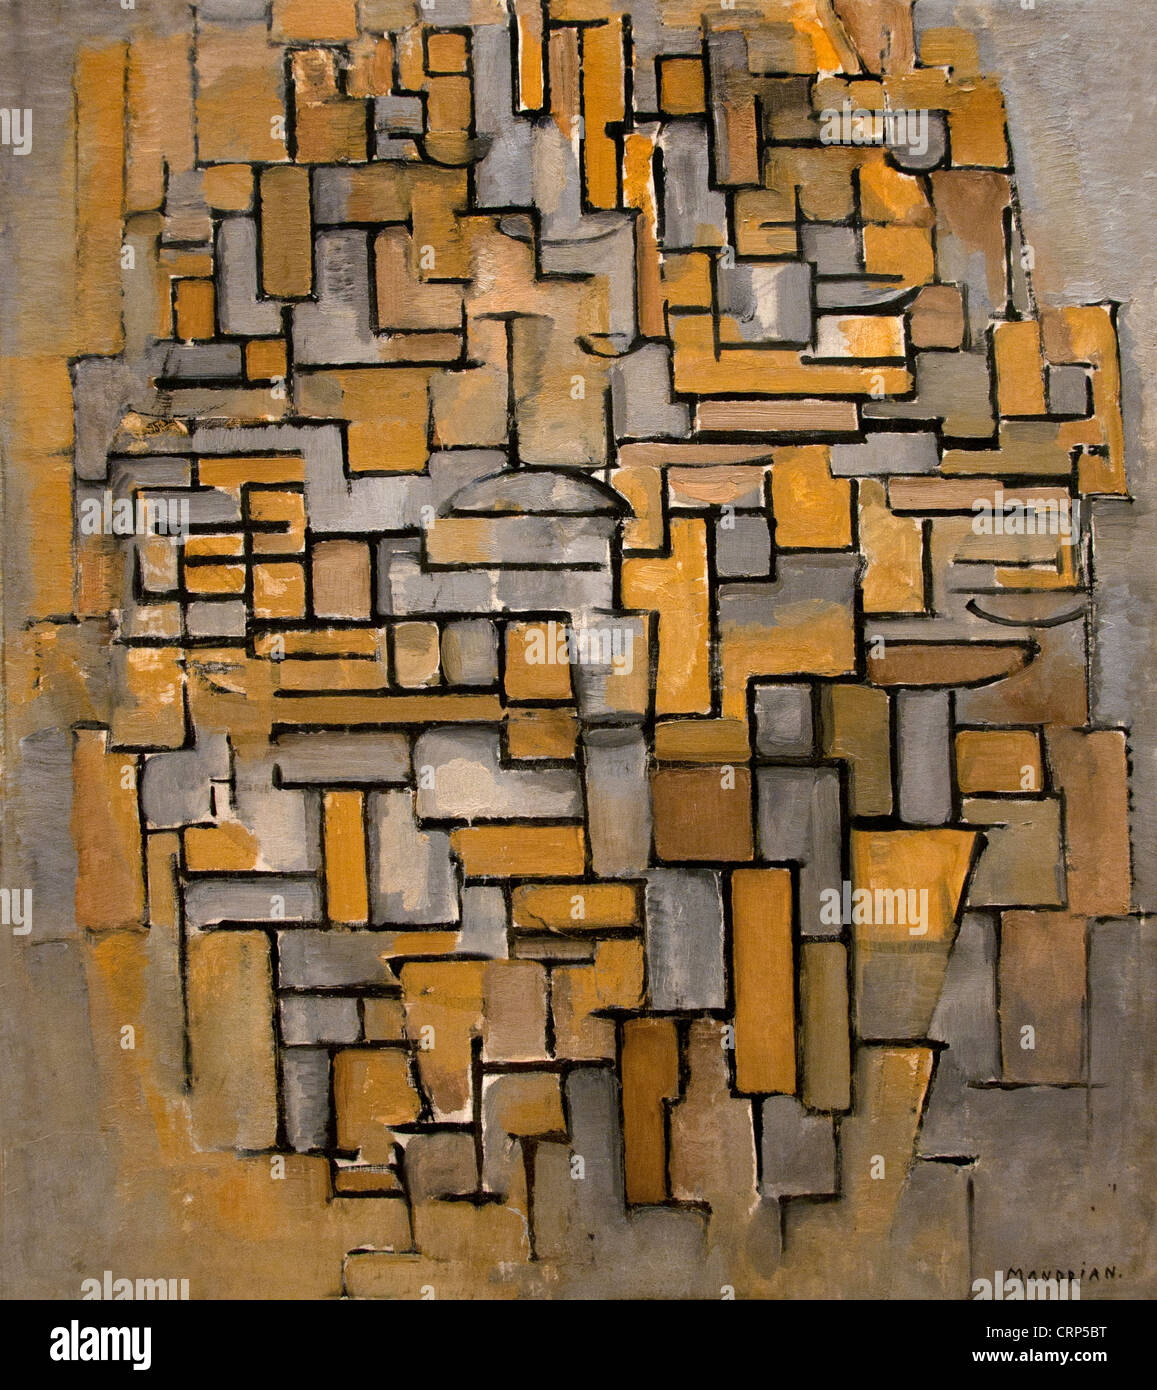 Composition en brun et gris 1913 Piet Mondrian - Pays-Bas néerlandais Mondriaan Banque D'Images